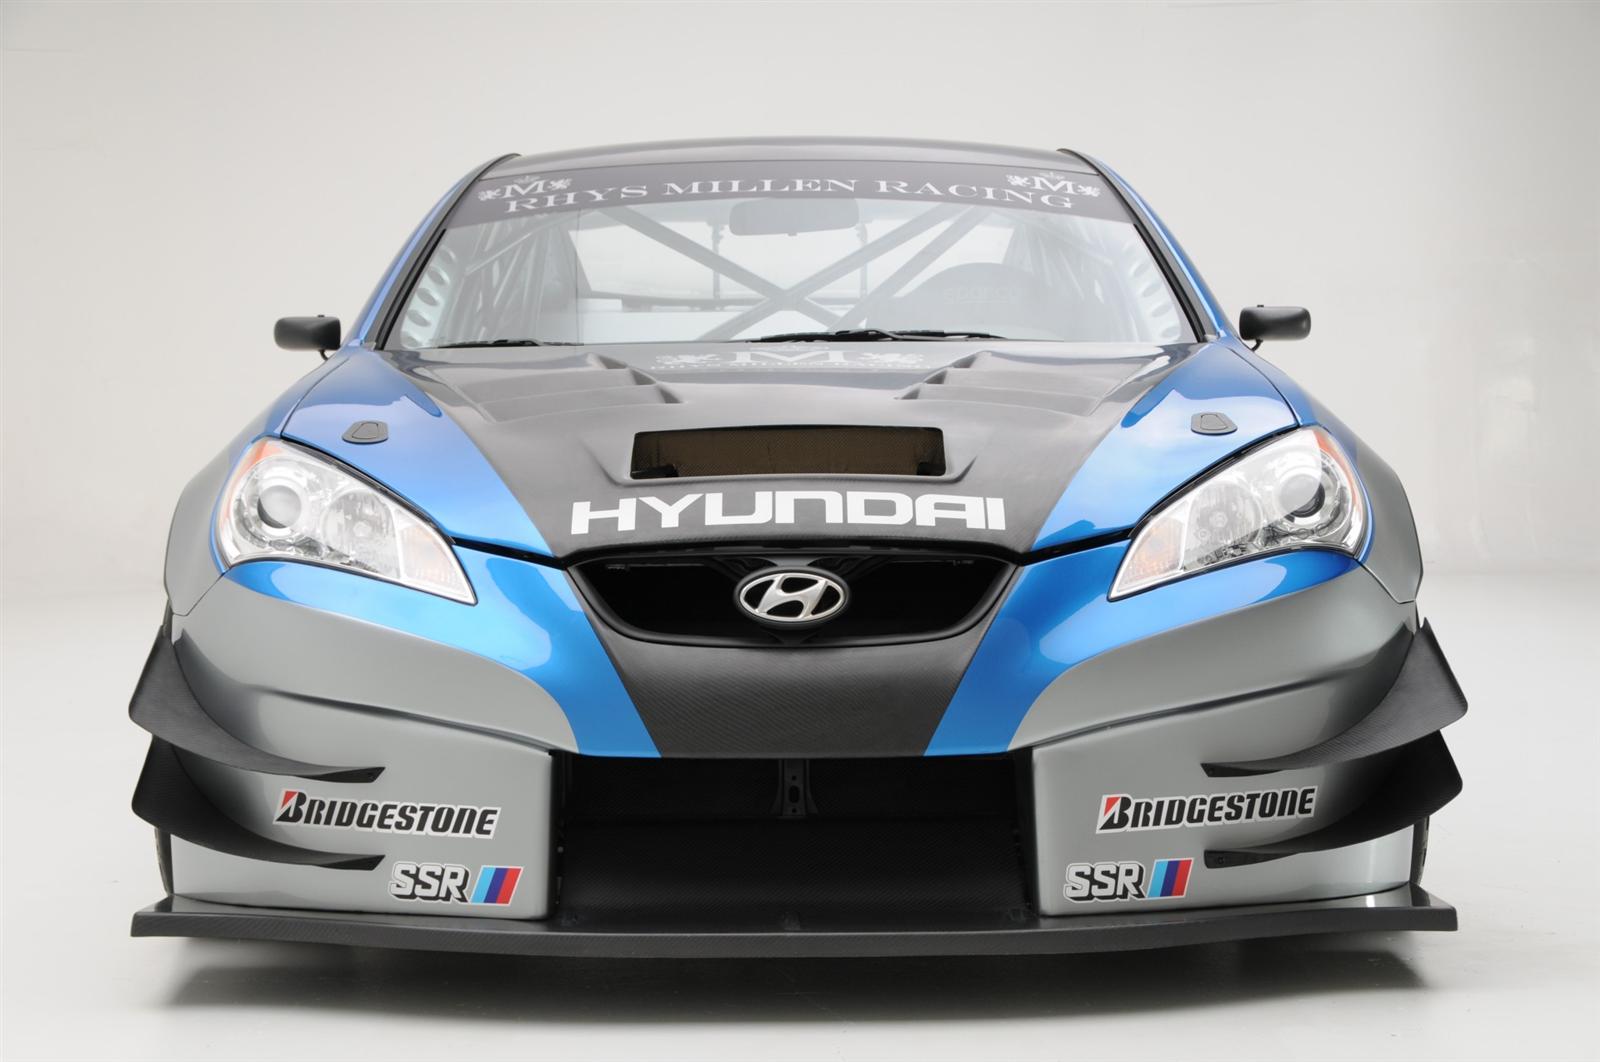 2009 Hyundai Genesis RHYS Millen Racing